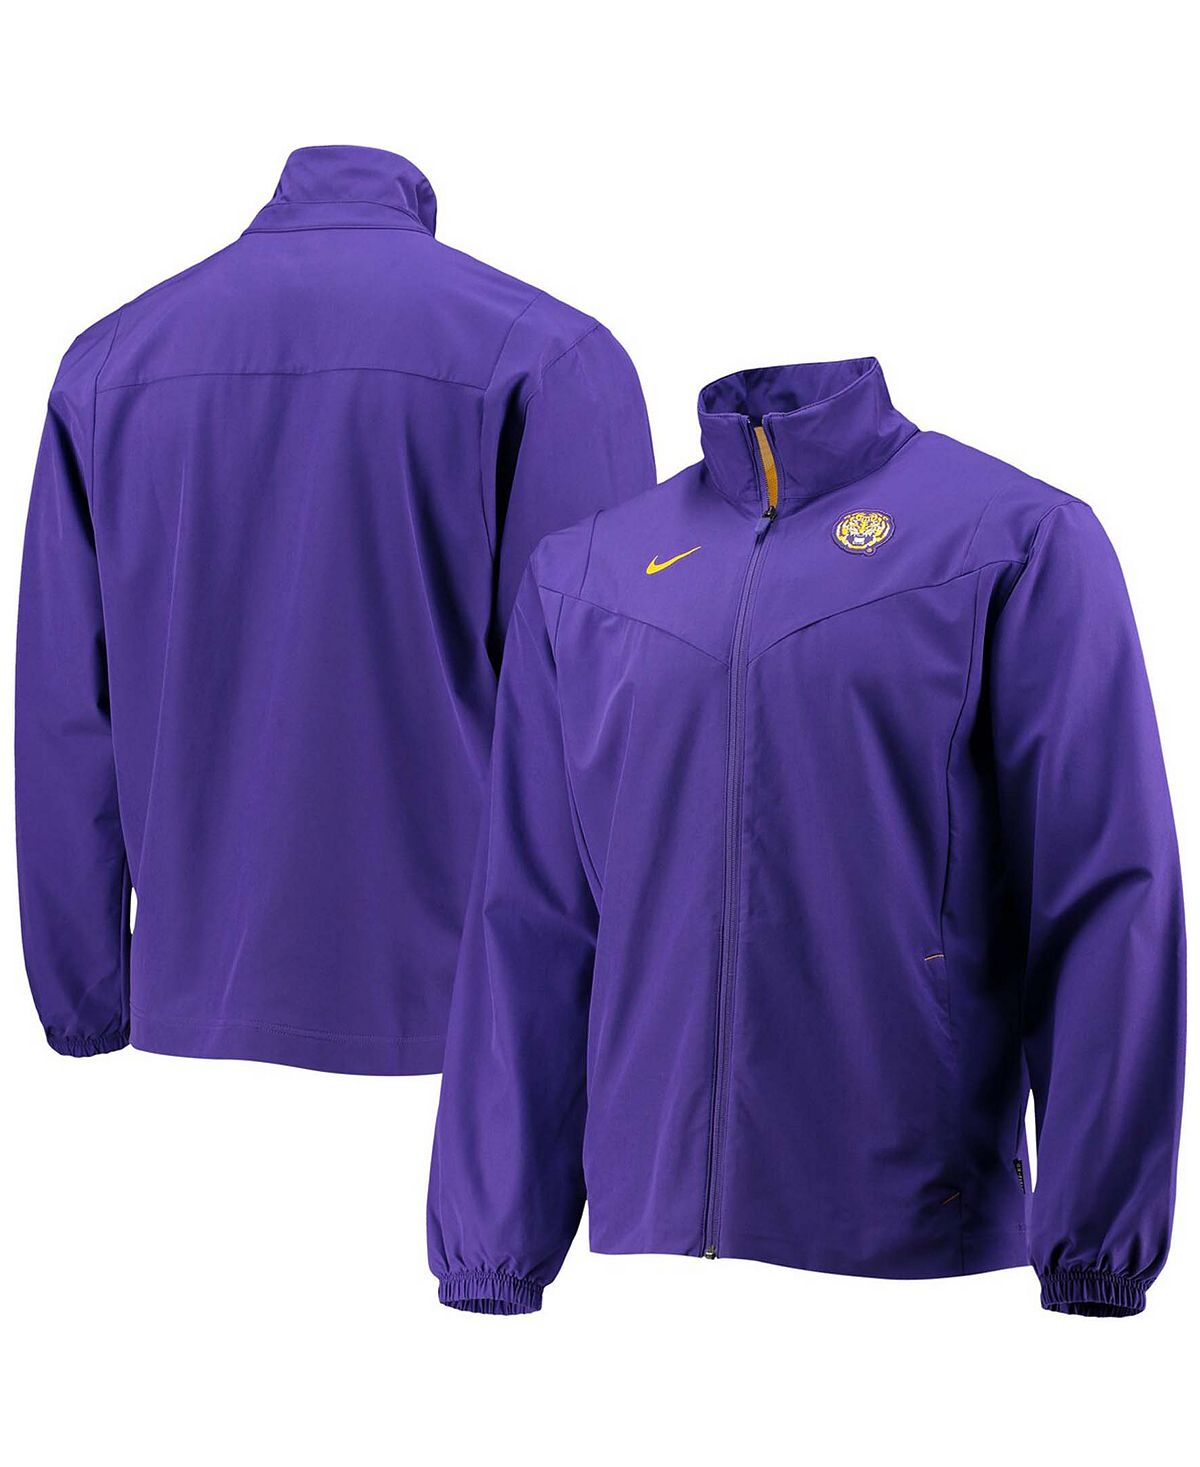 Мужская фиолетовая куртка lsu tigers 2021 sideline с молнией во всю длину Nike, мульти